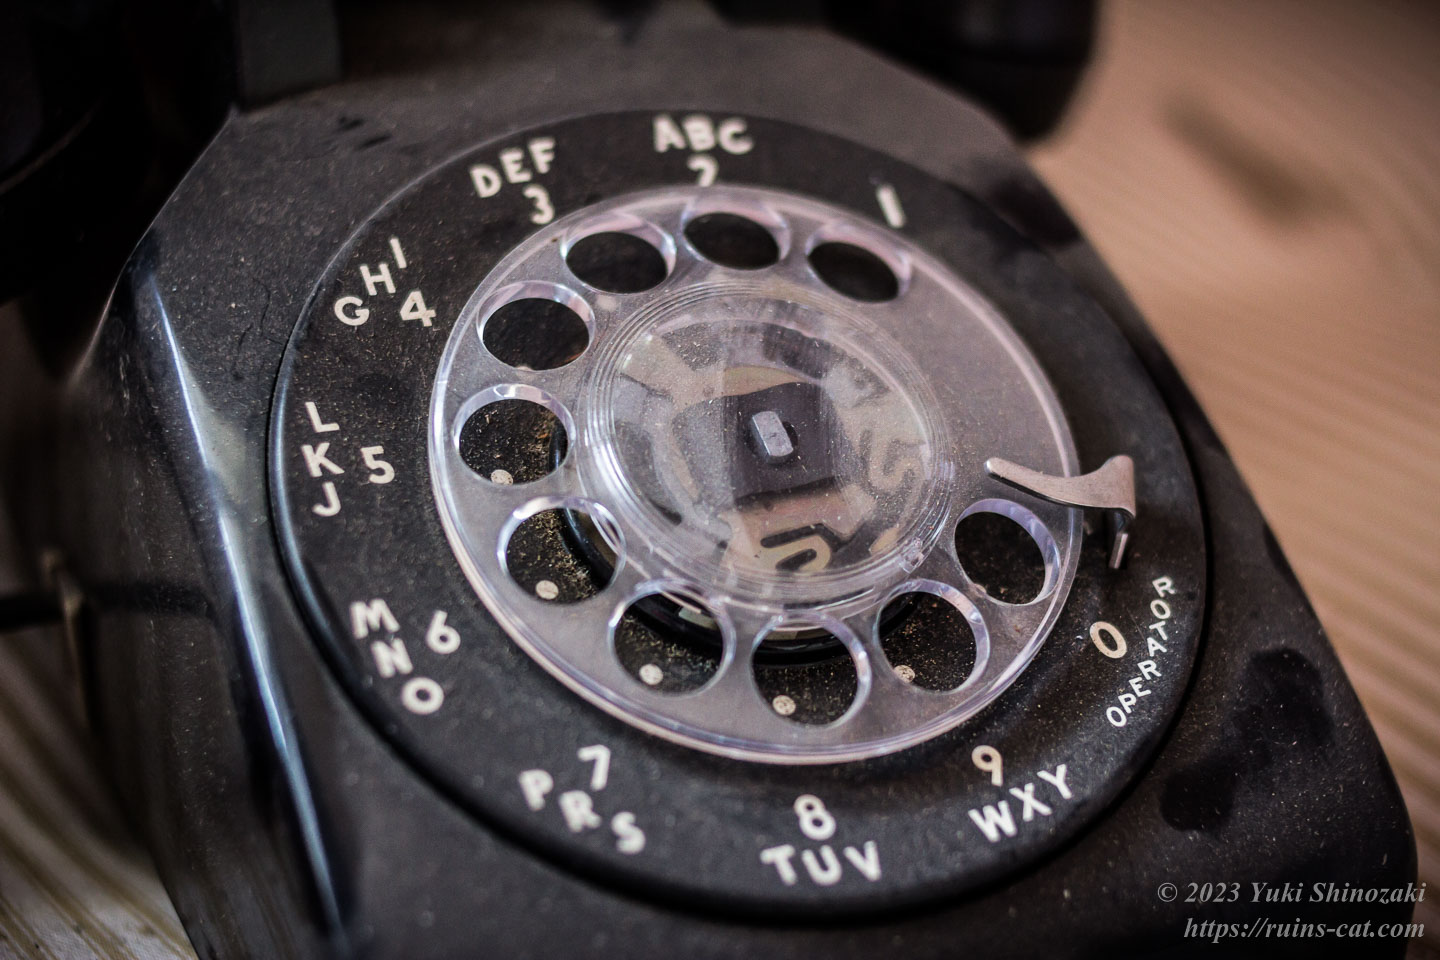 客室の黒電話。0番の位置にOPERATORと書かれている。